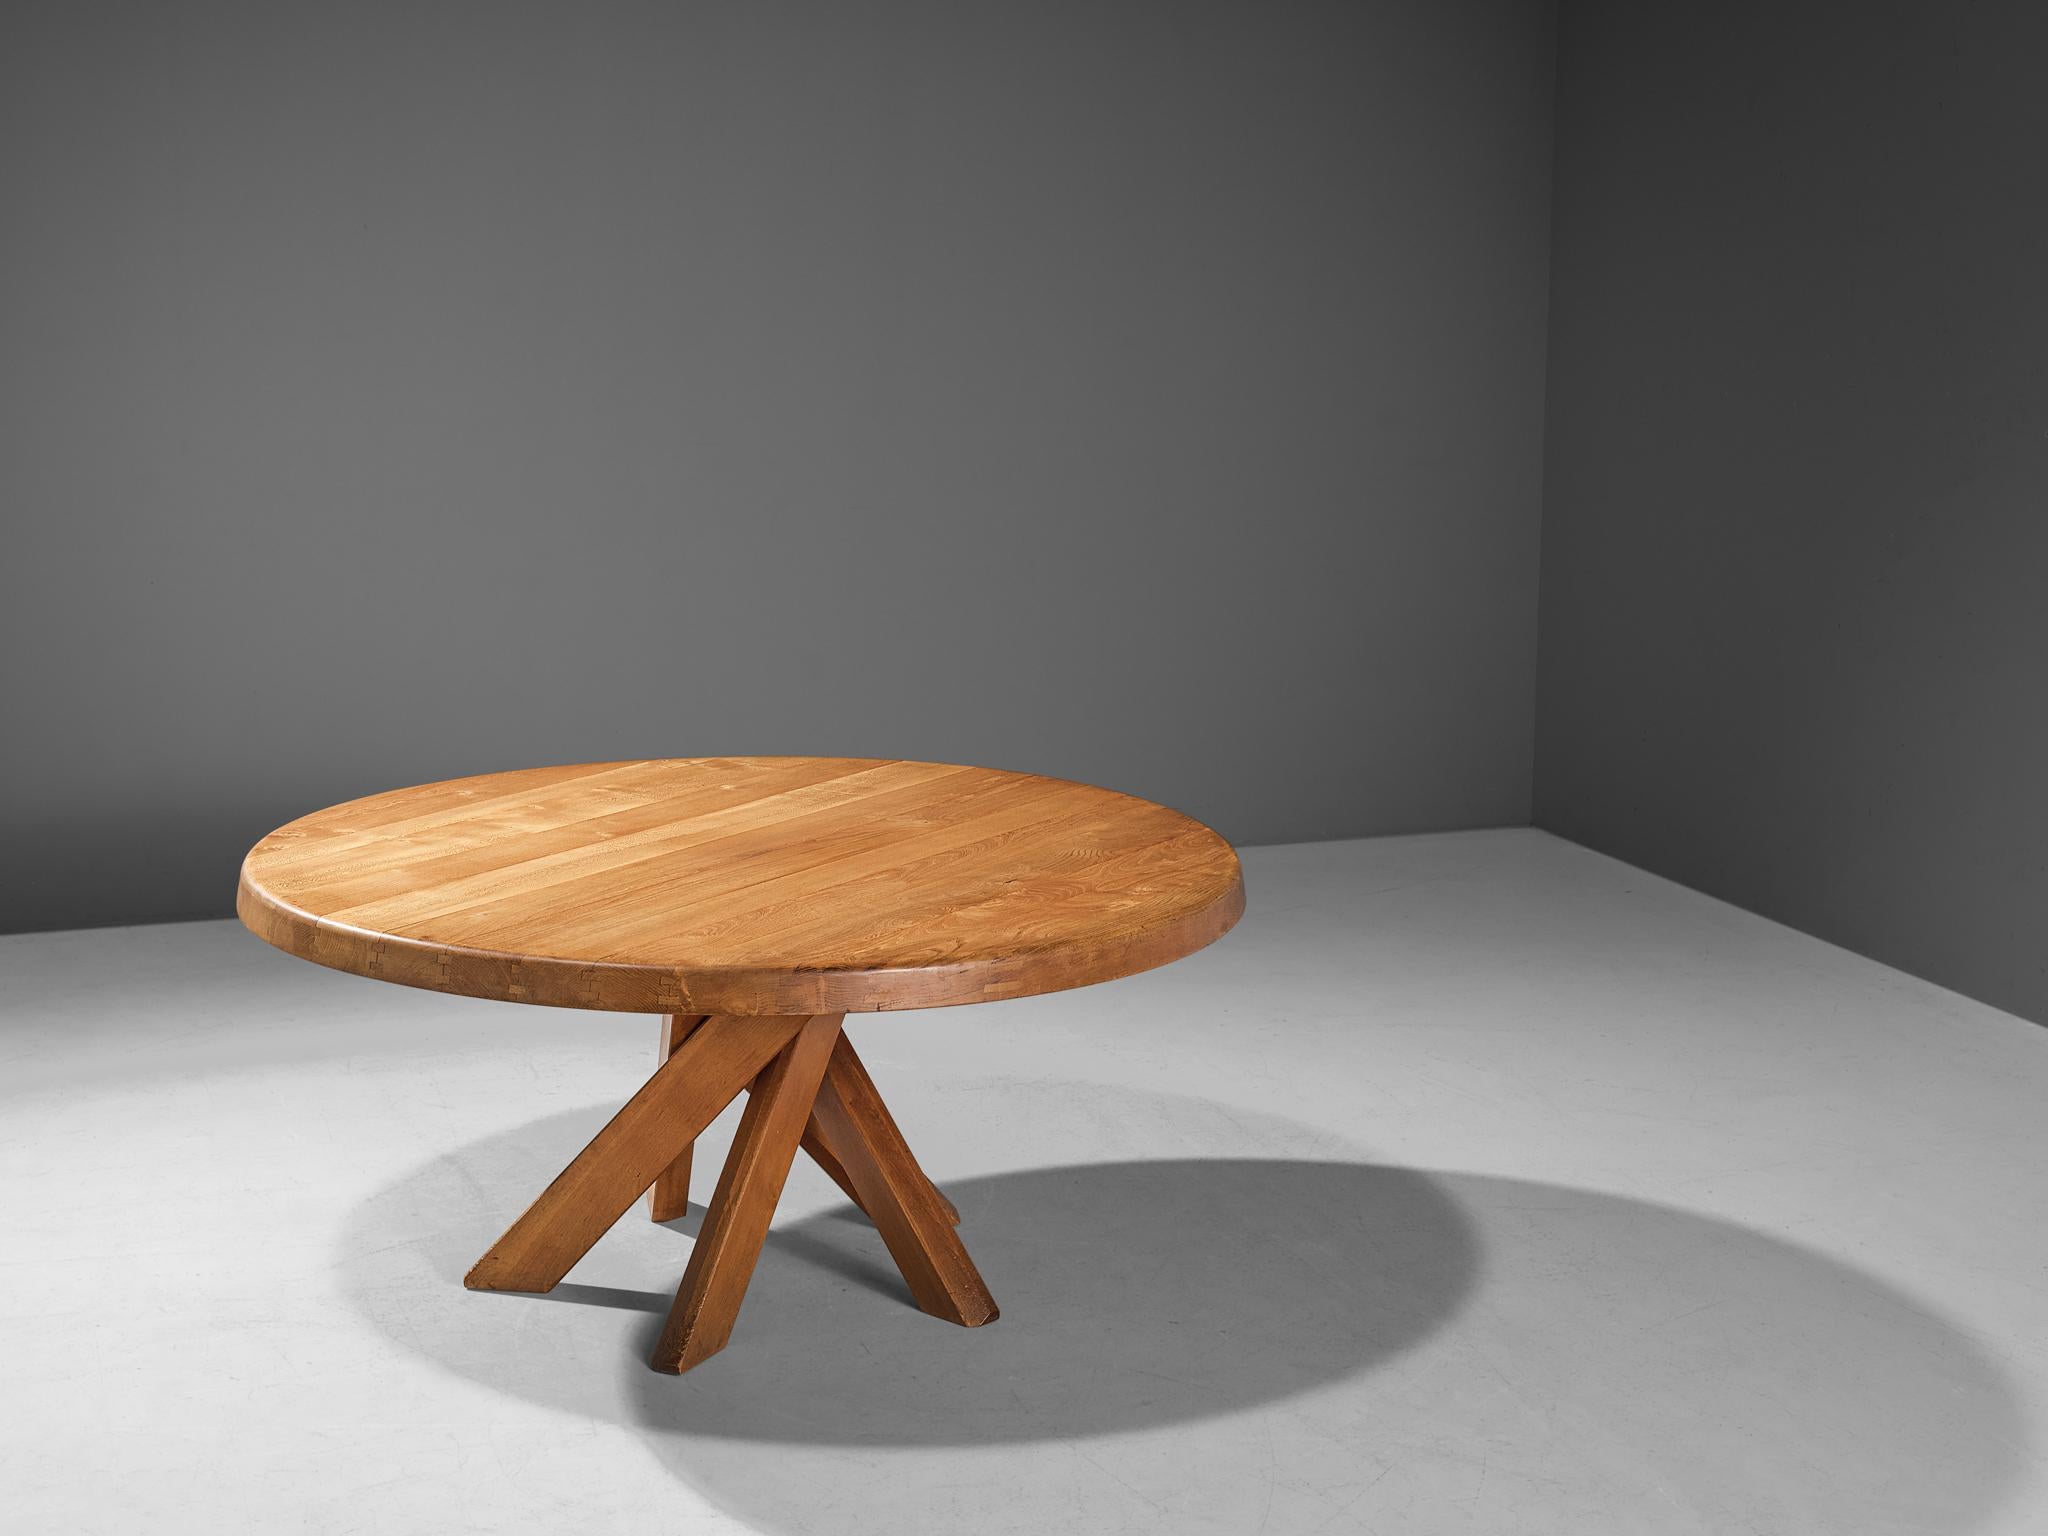 Orme Table de salle à manger T21 de Pierre Chapo en orme massif, diamètre 1 M60